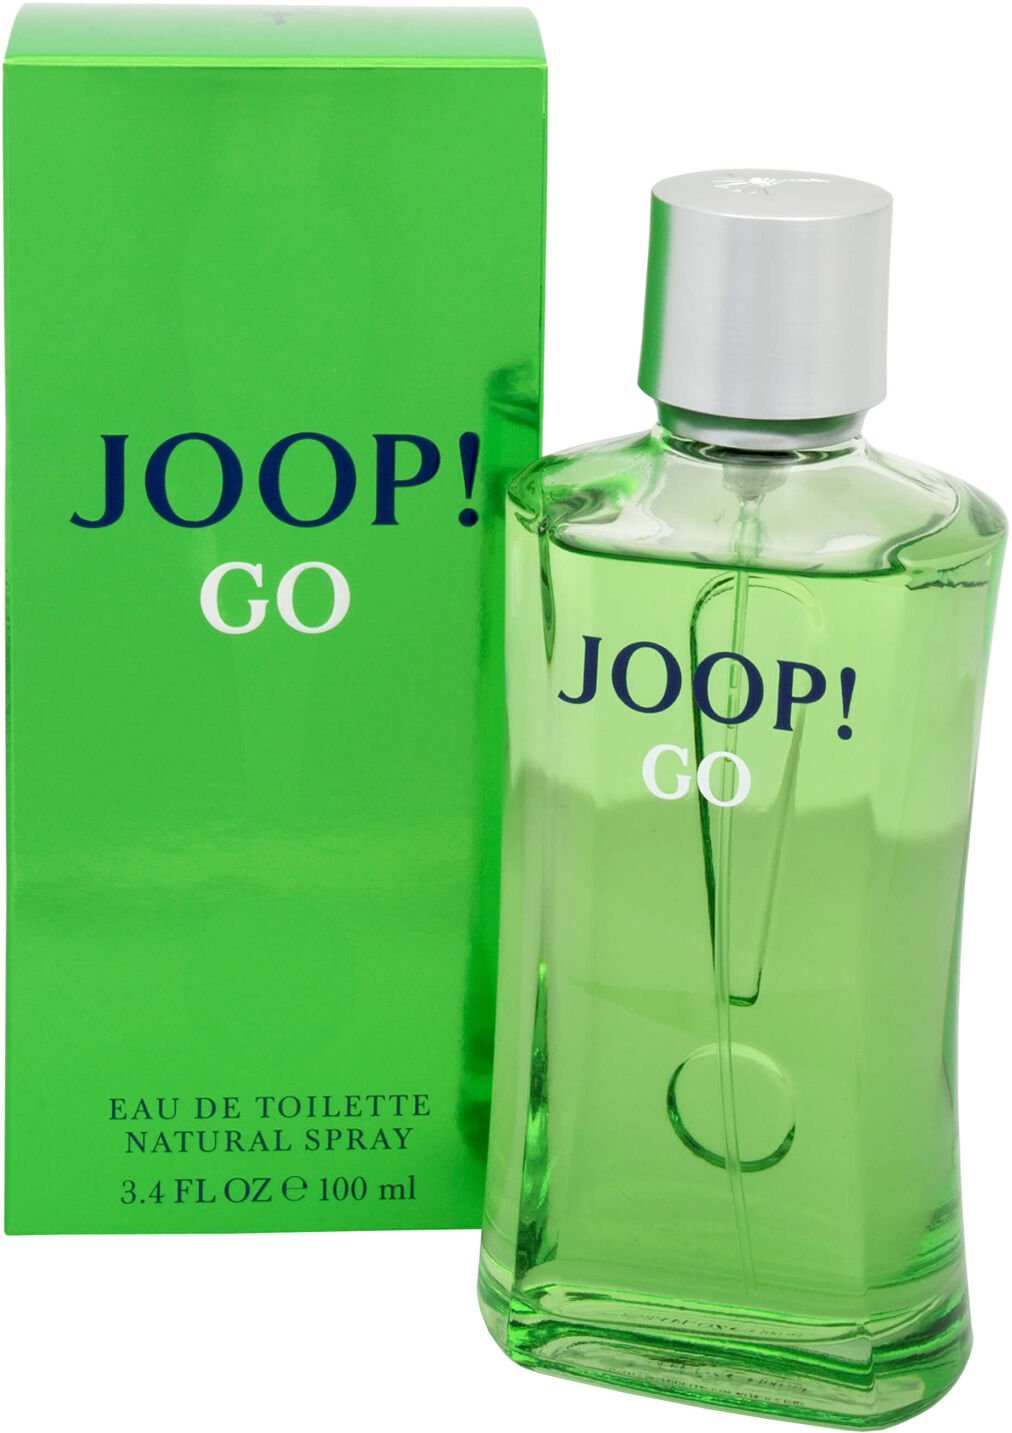 Joop! Go - EDT 200 ml